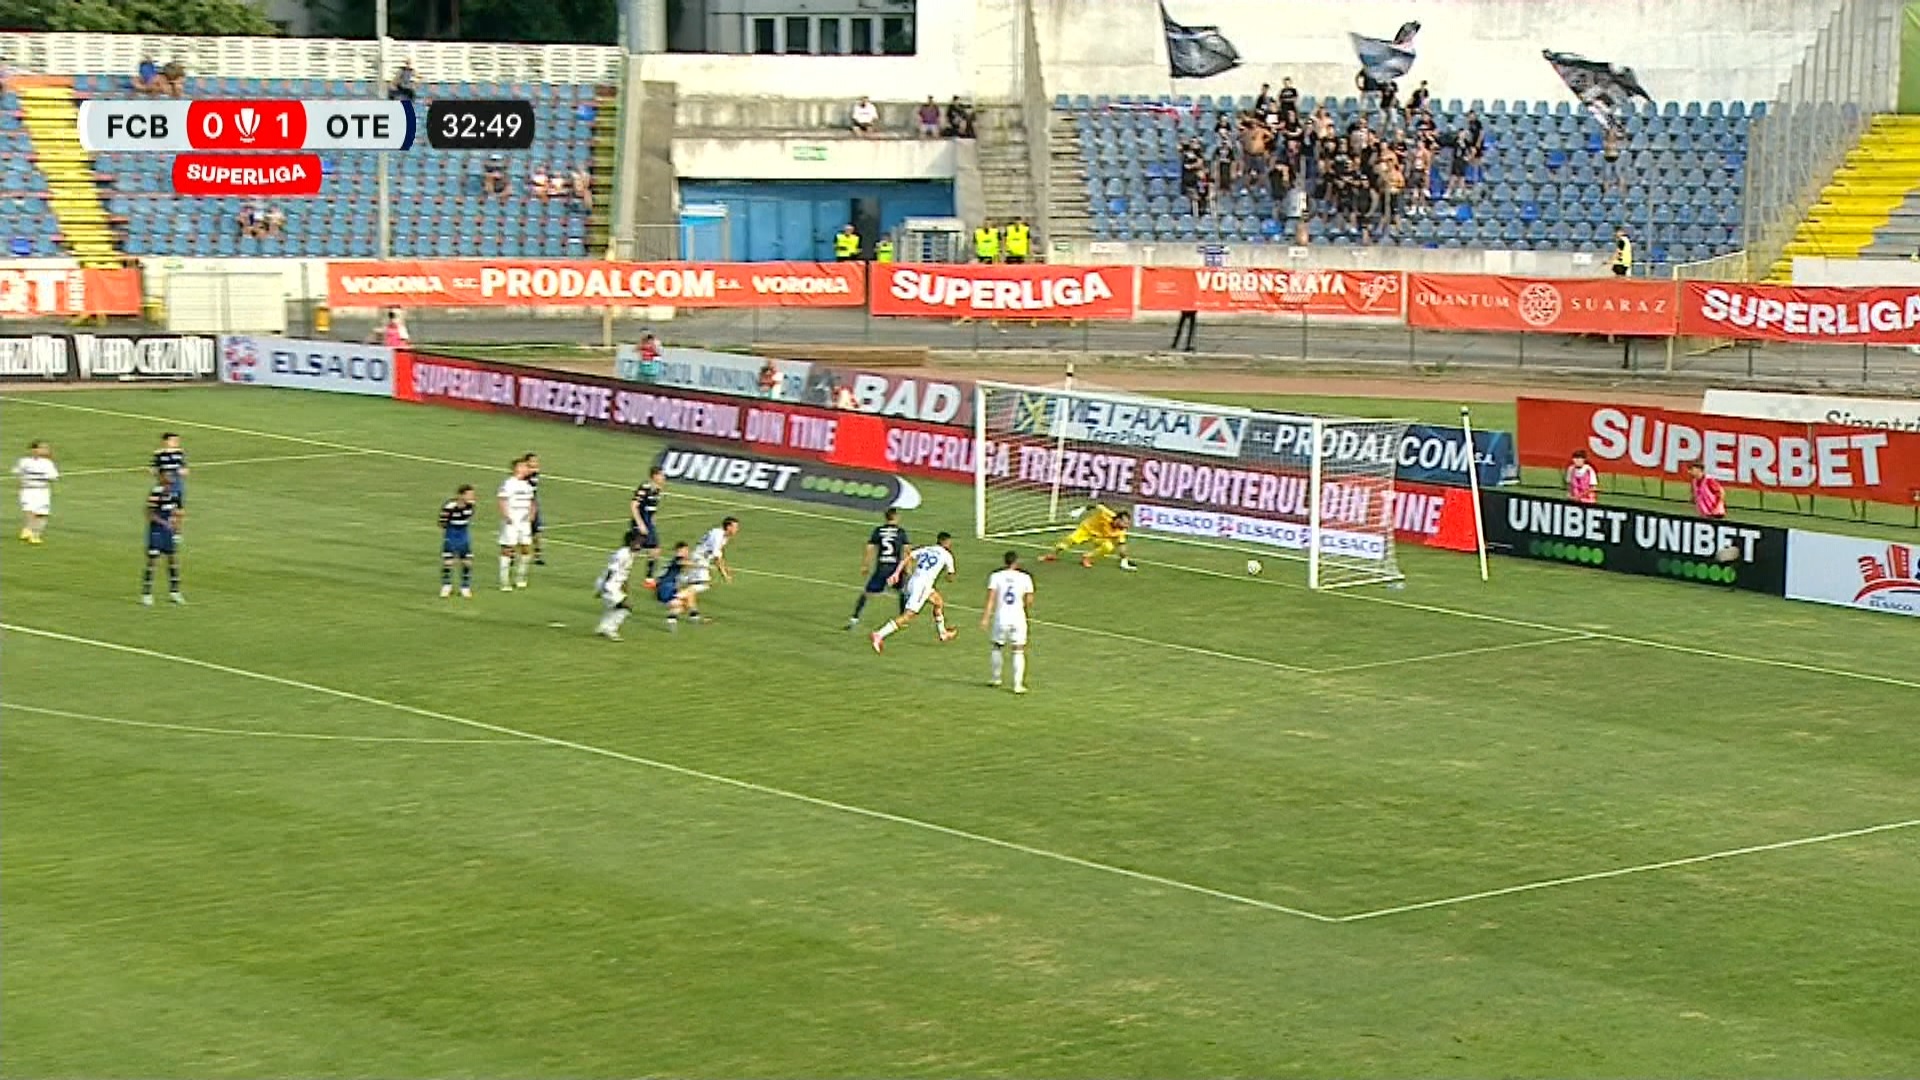 FC Botoșani - Oțelul 1-1, ACUM, pe Digi Sport 1. Friday Adams a restabilit egalitatea